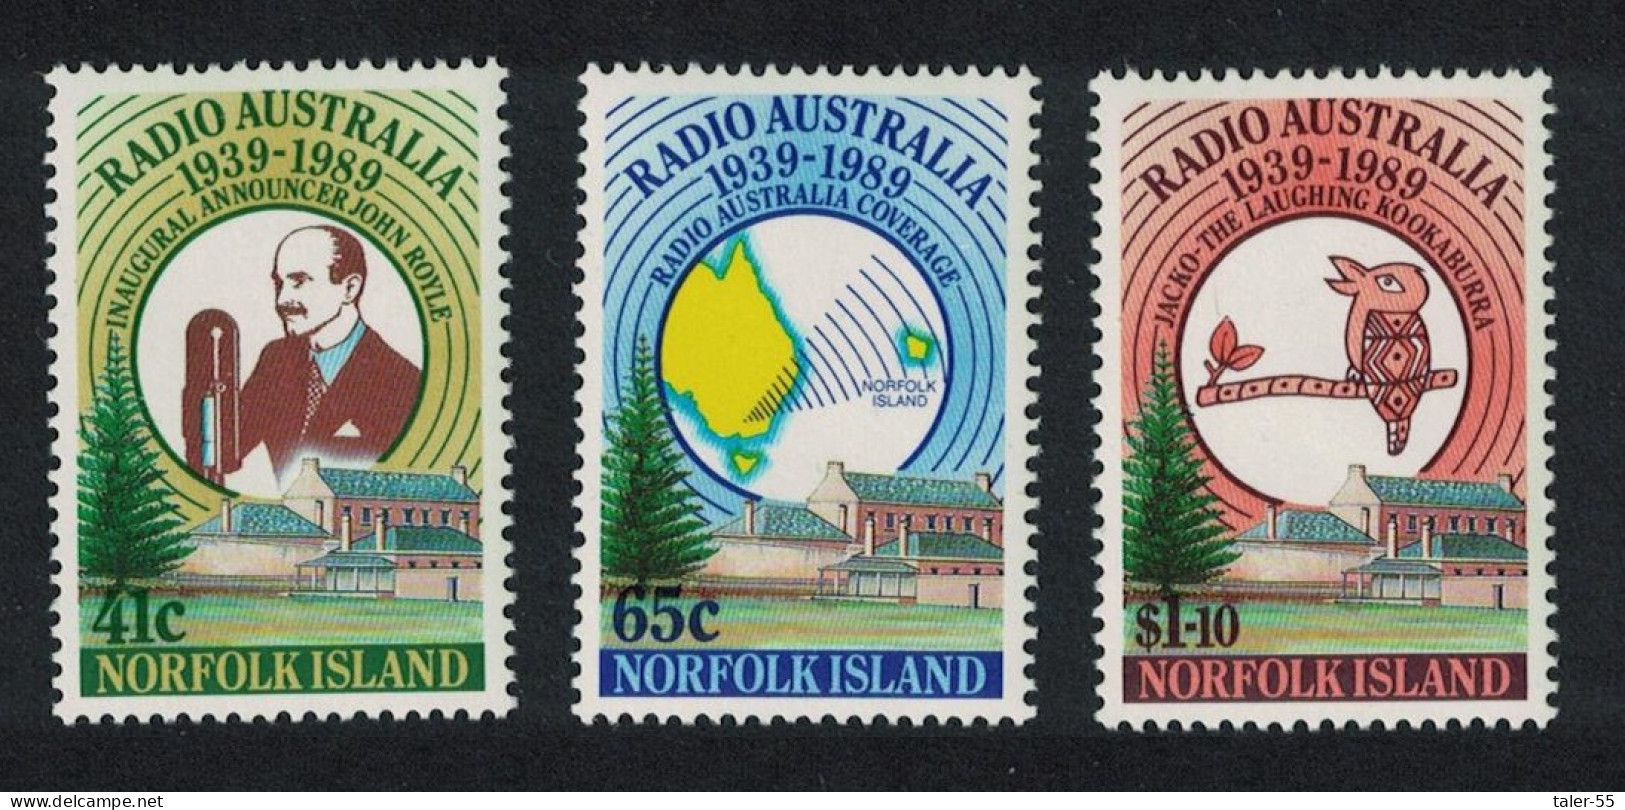 Norfolk Bird 50th Anniversary Of Radio Australia 3v 1989 MNH SG#474-476 Sc#466-468 - Isla Norfolk